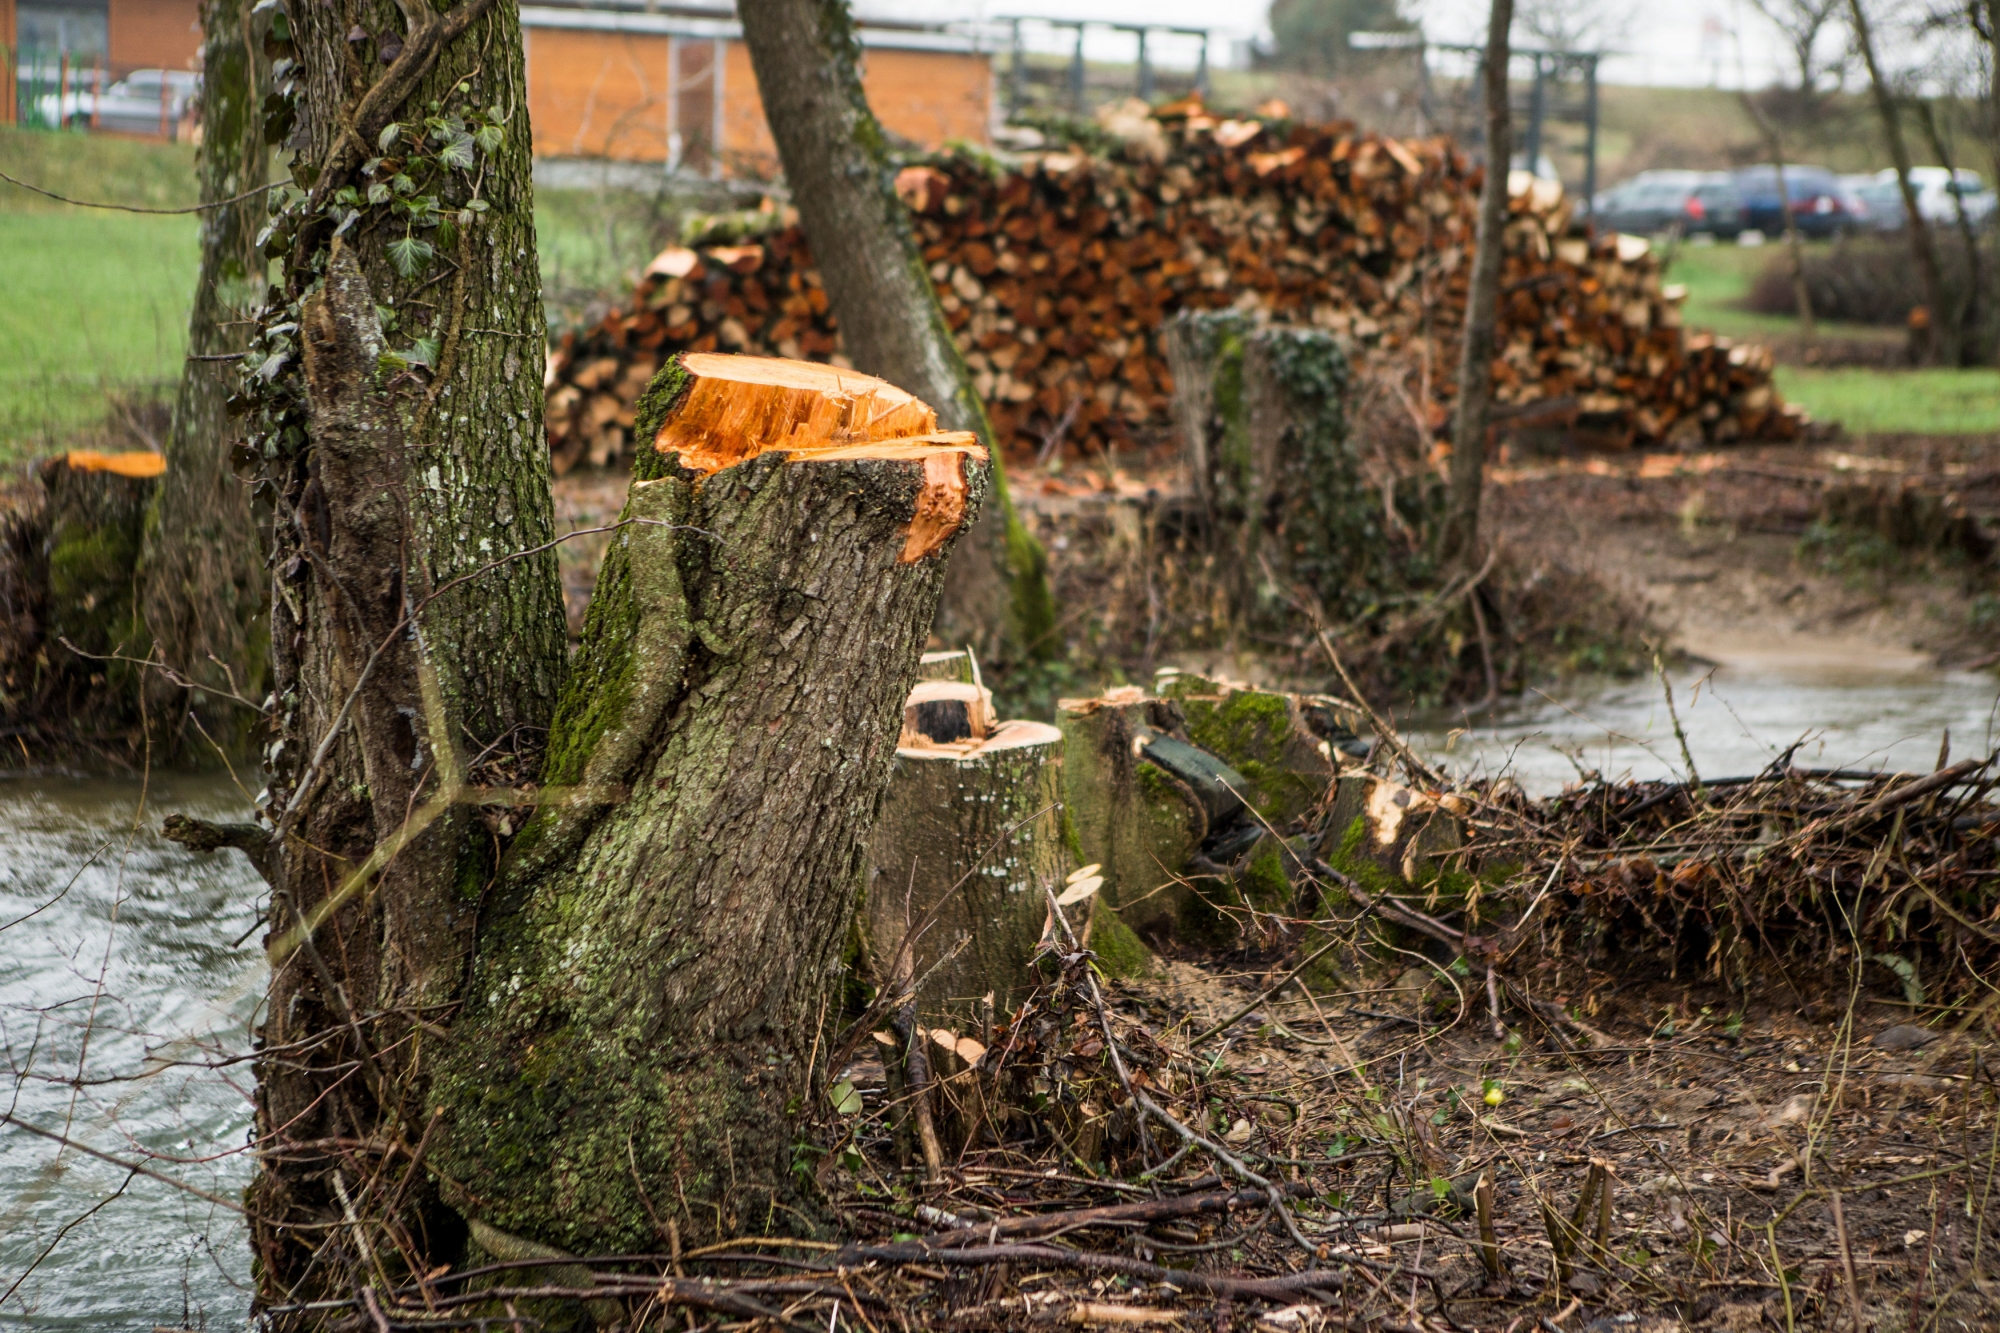 Les arbres ont été coupés pour des questions de sécurité selon le garde forestier en charge de ce secteur.